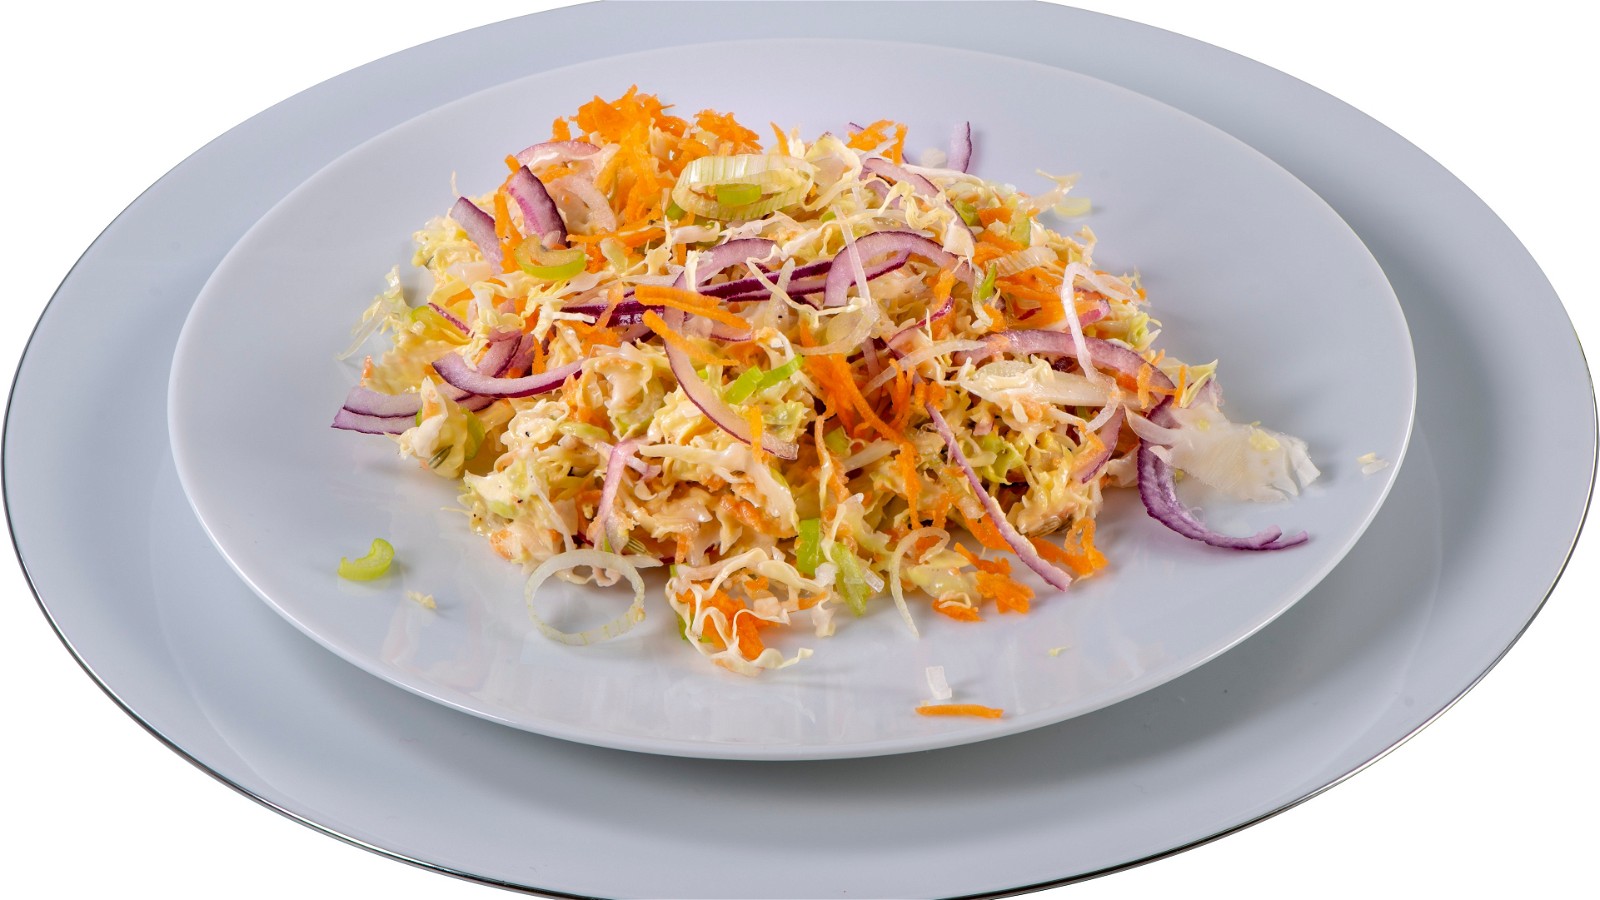 Image of Ramen Coleslaw Salad